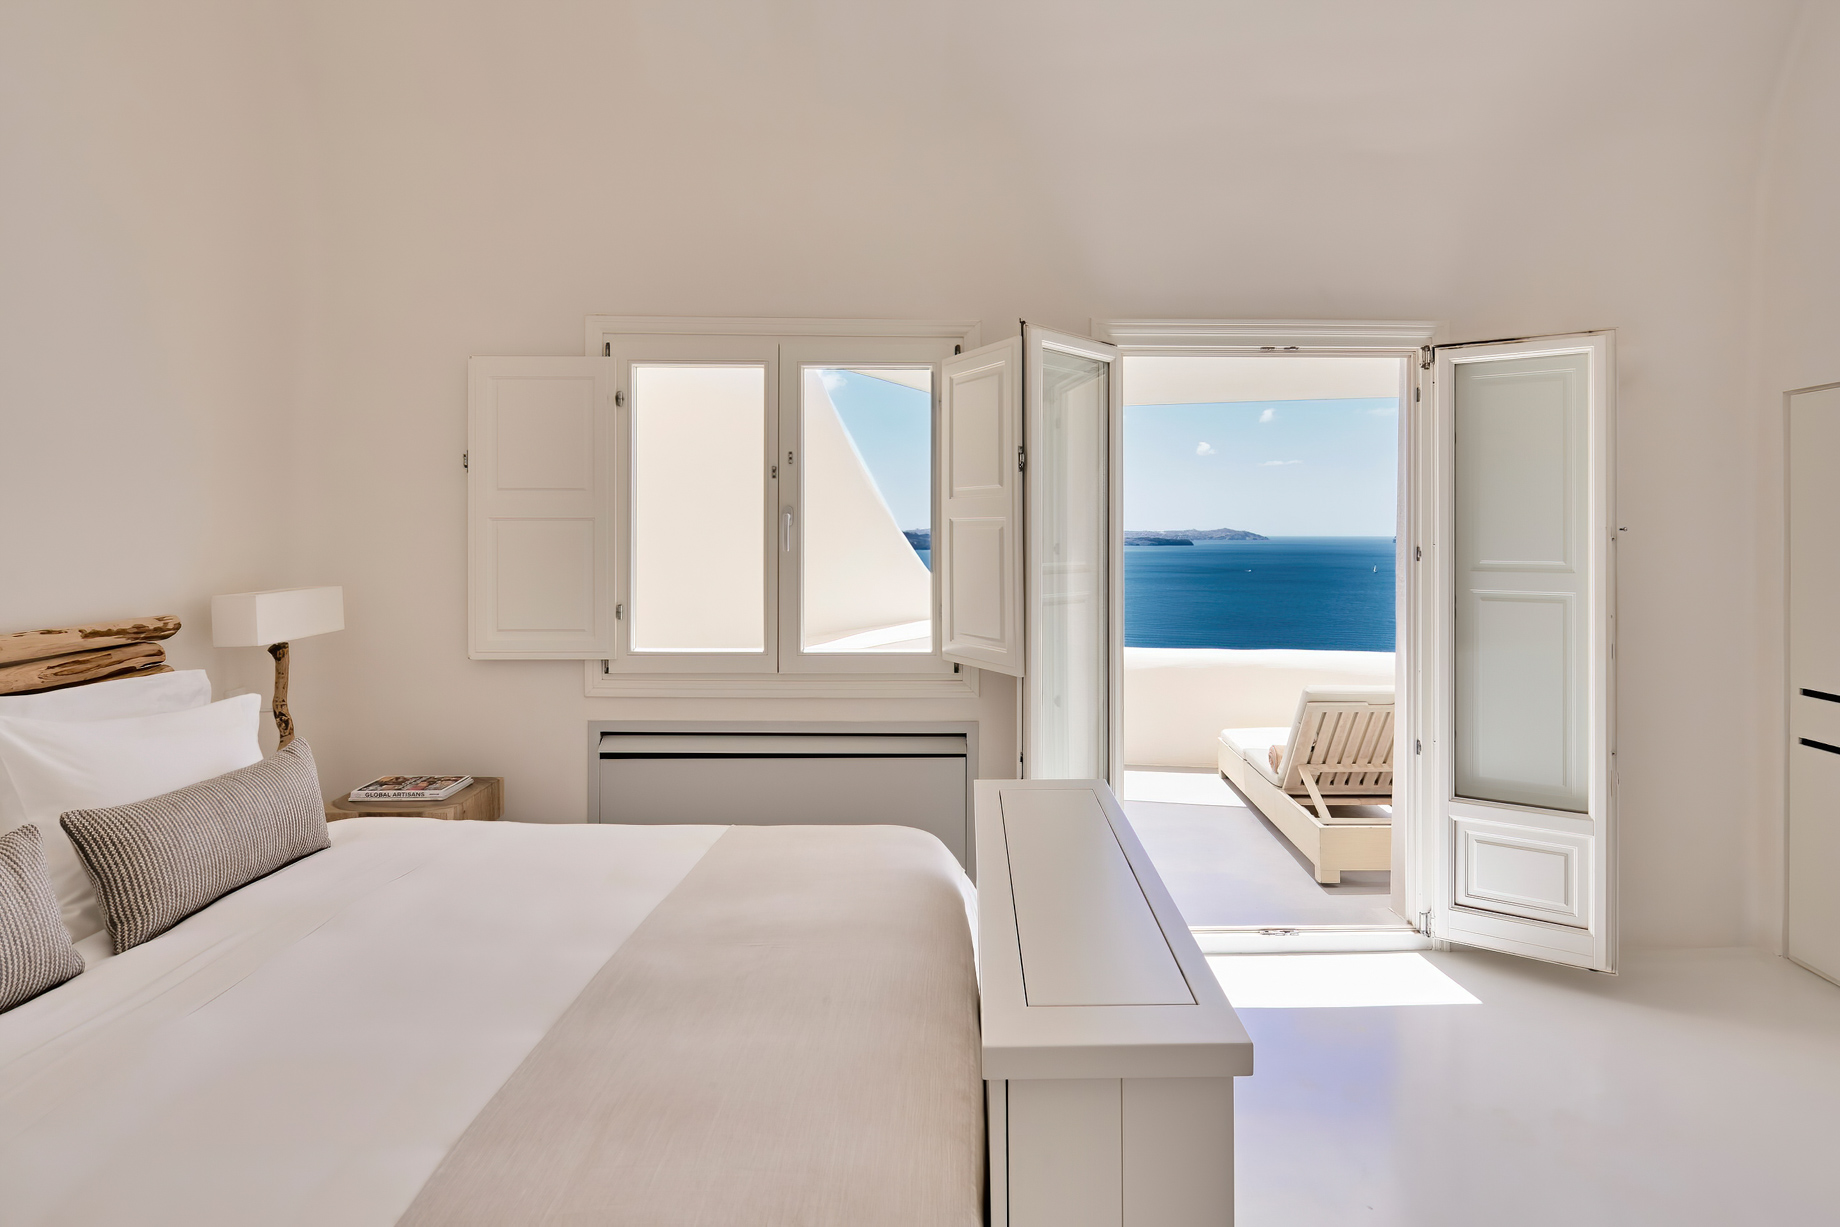 Mystique Hotel Santorini – Oia, Santorini Island, Greece – King Spiritual Suite